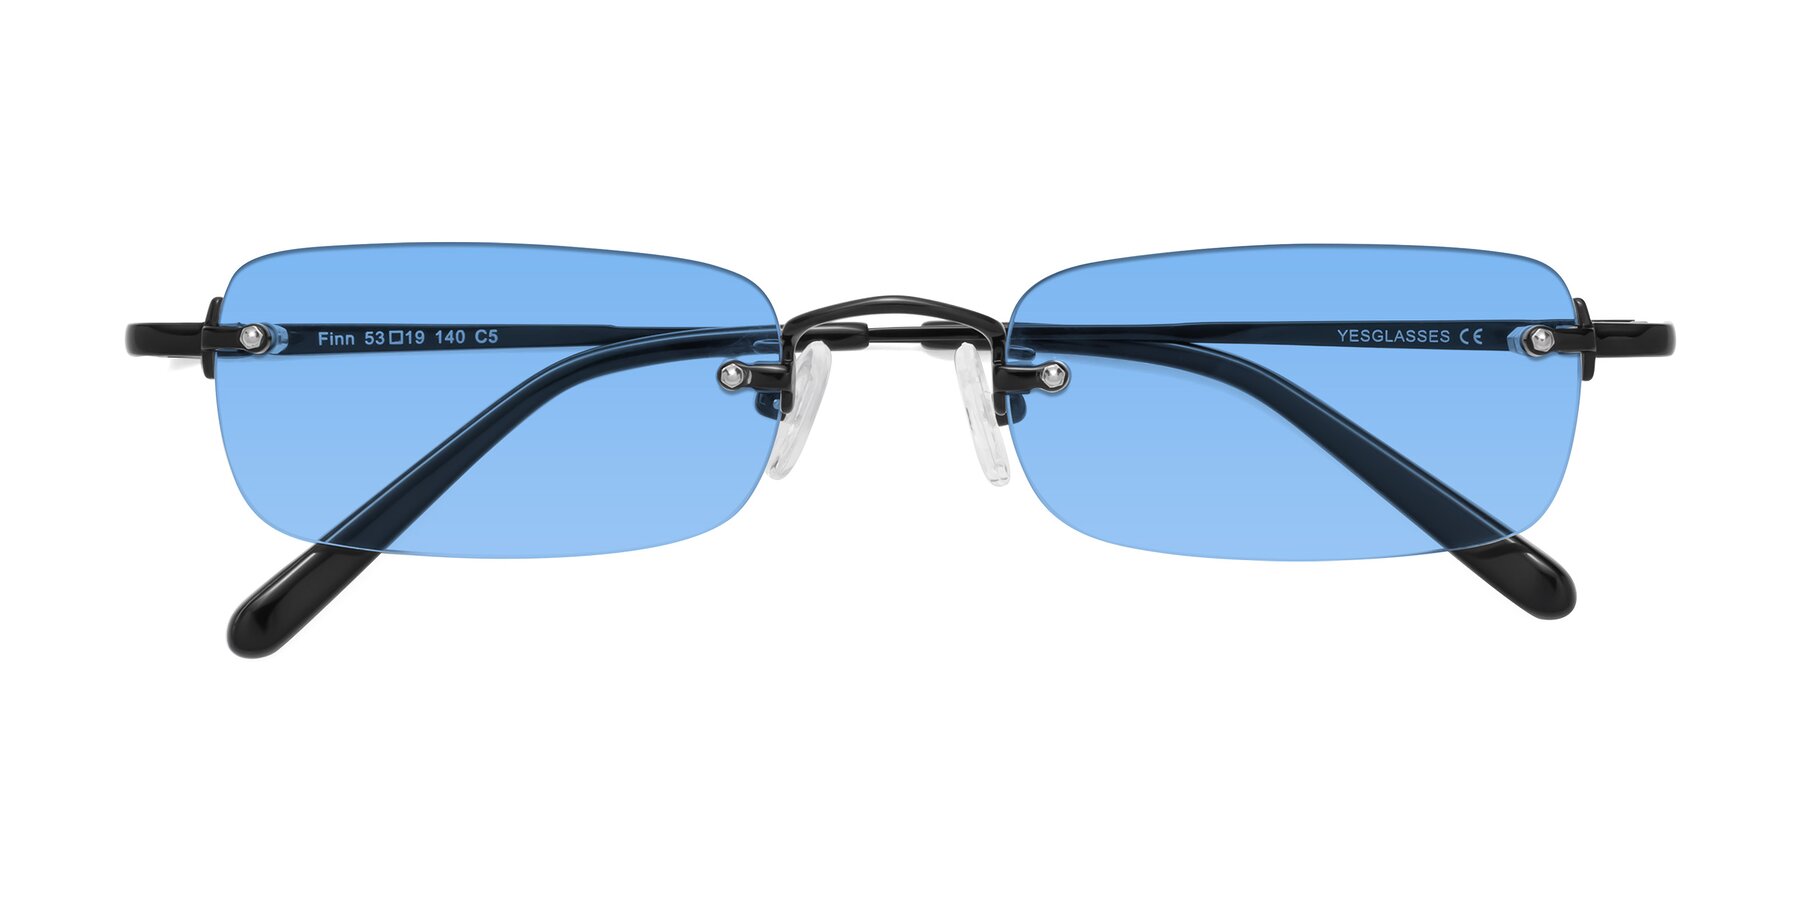 Black Wide Rectangle Rimless Eyeglasses - Finn  Black eyeglasses frames,  Eyeglasses, Glasses inspiration